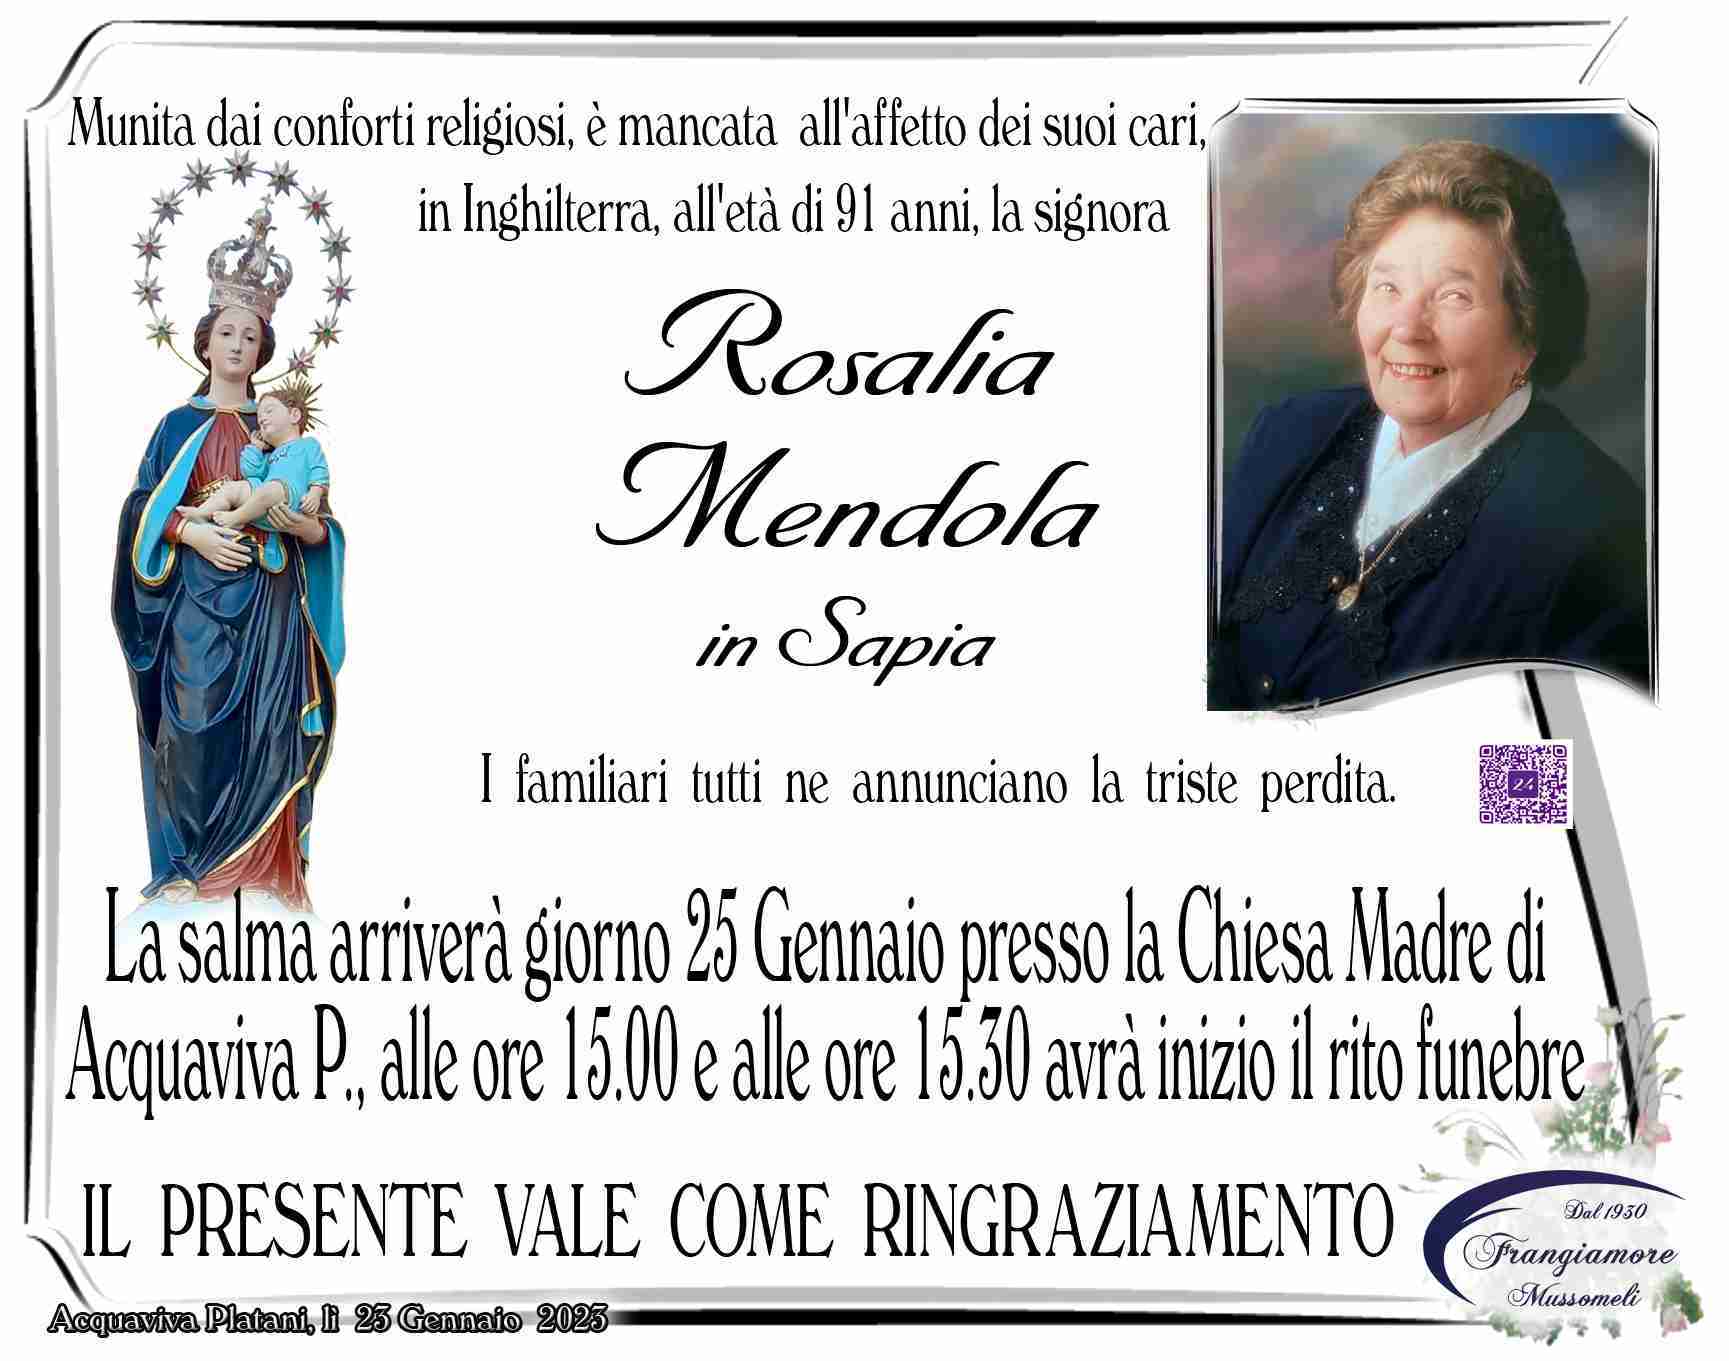 Rosalia Mendola